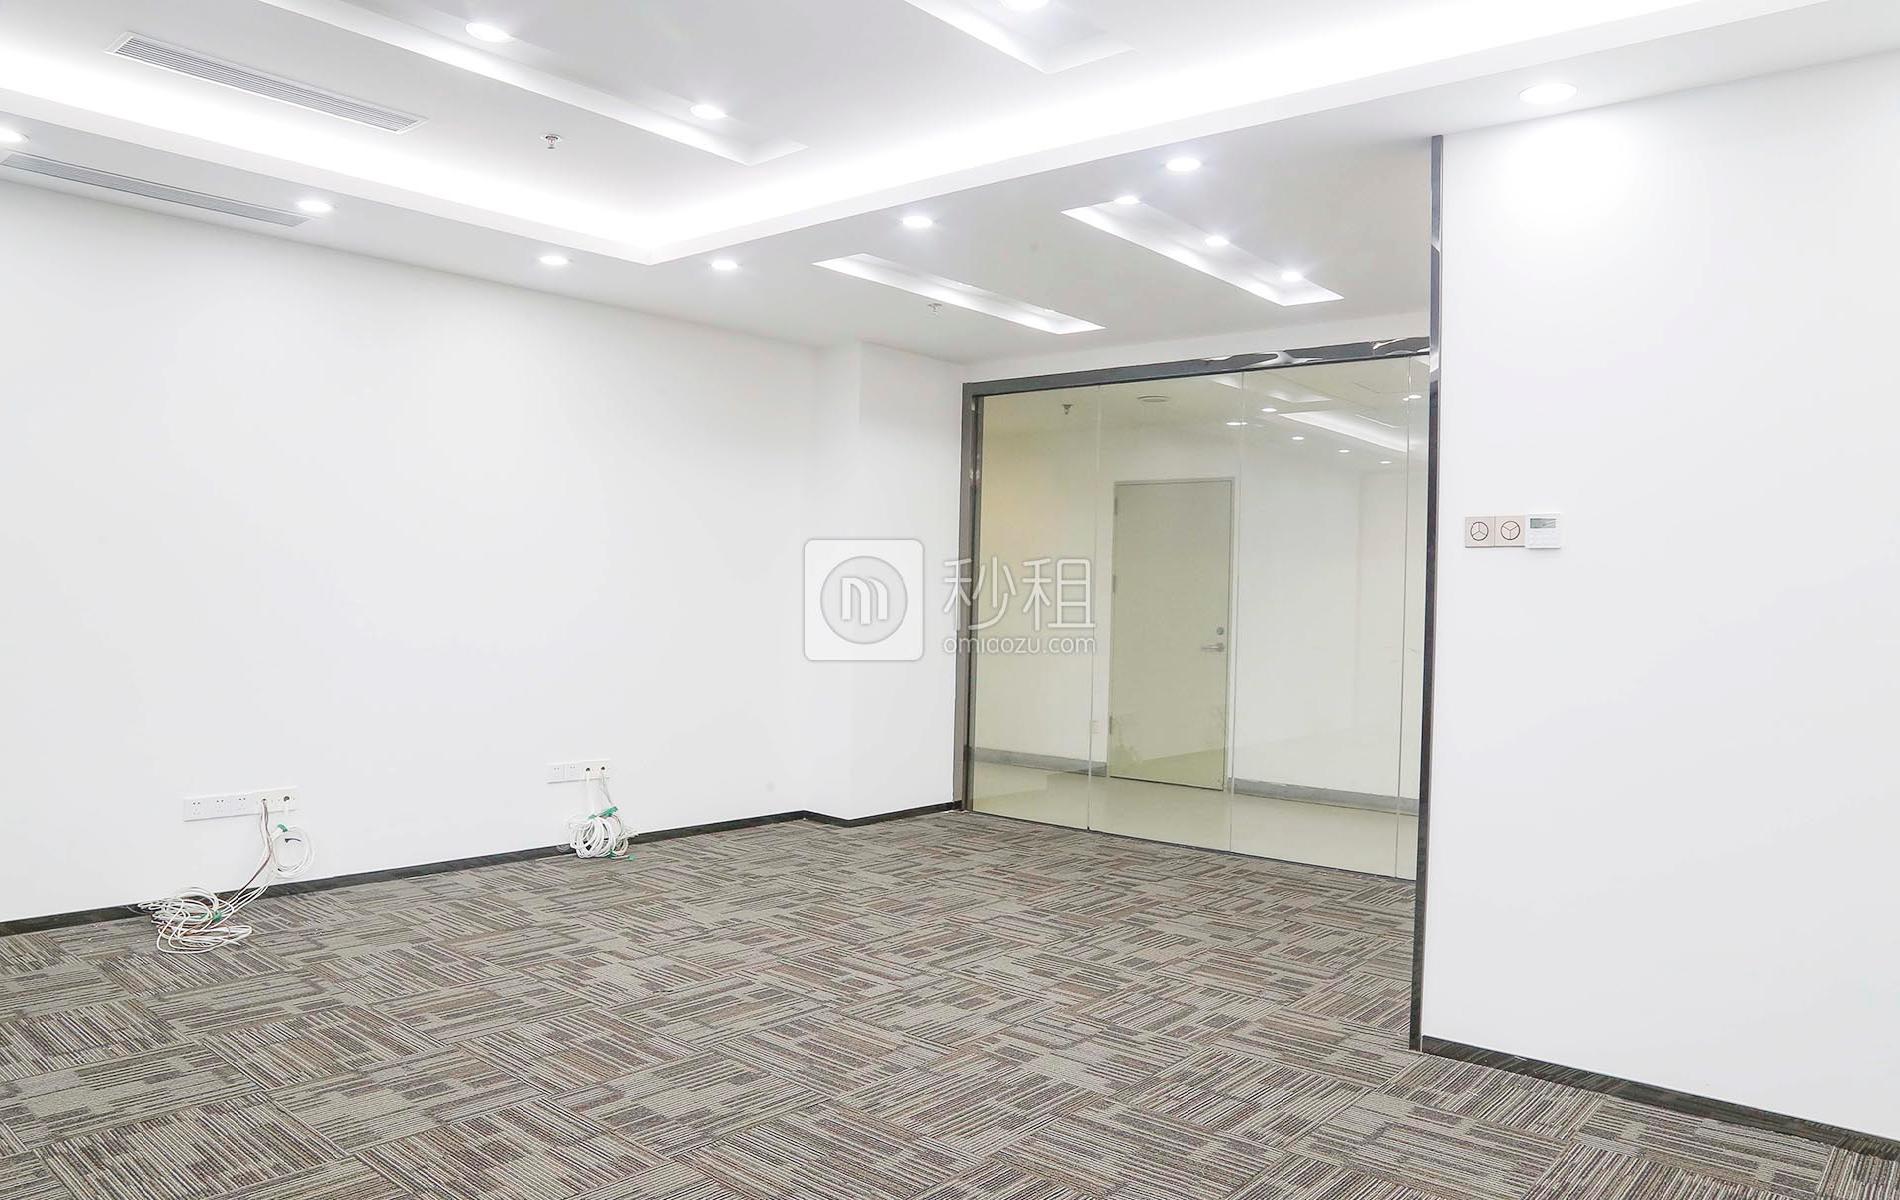 金潤大廈寫字樓出租115平米豪裝辦公室108元/m2.月